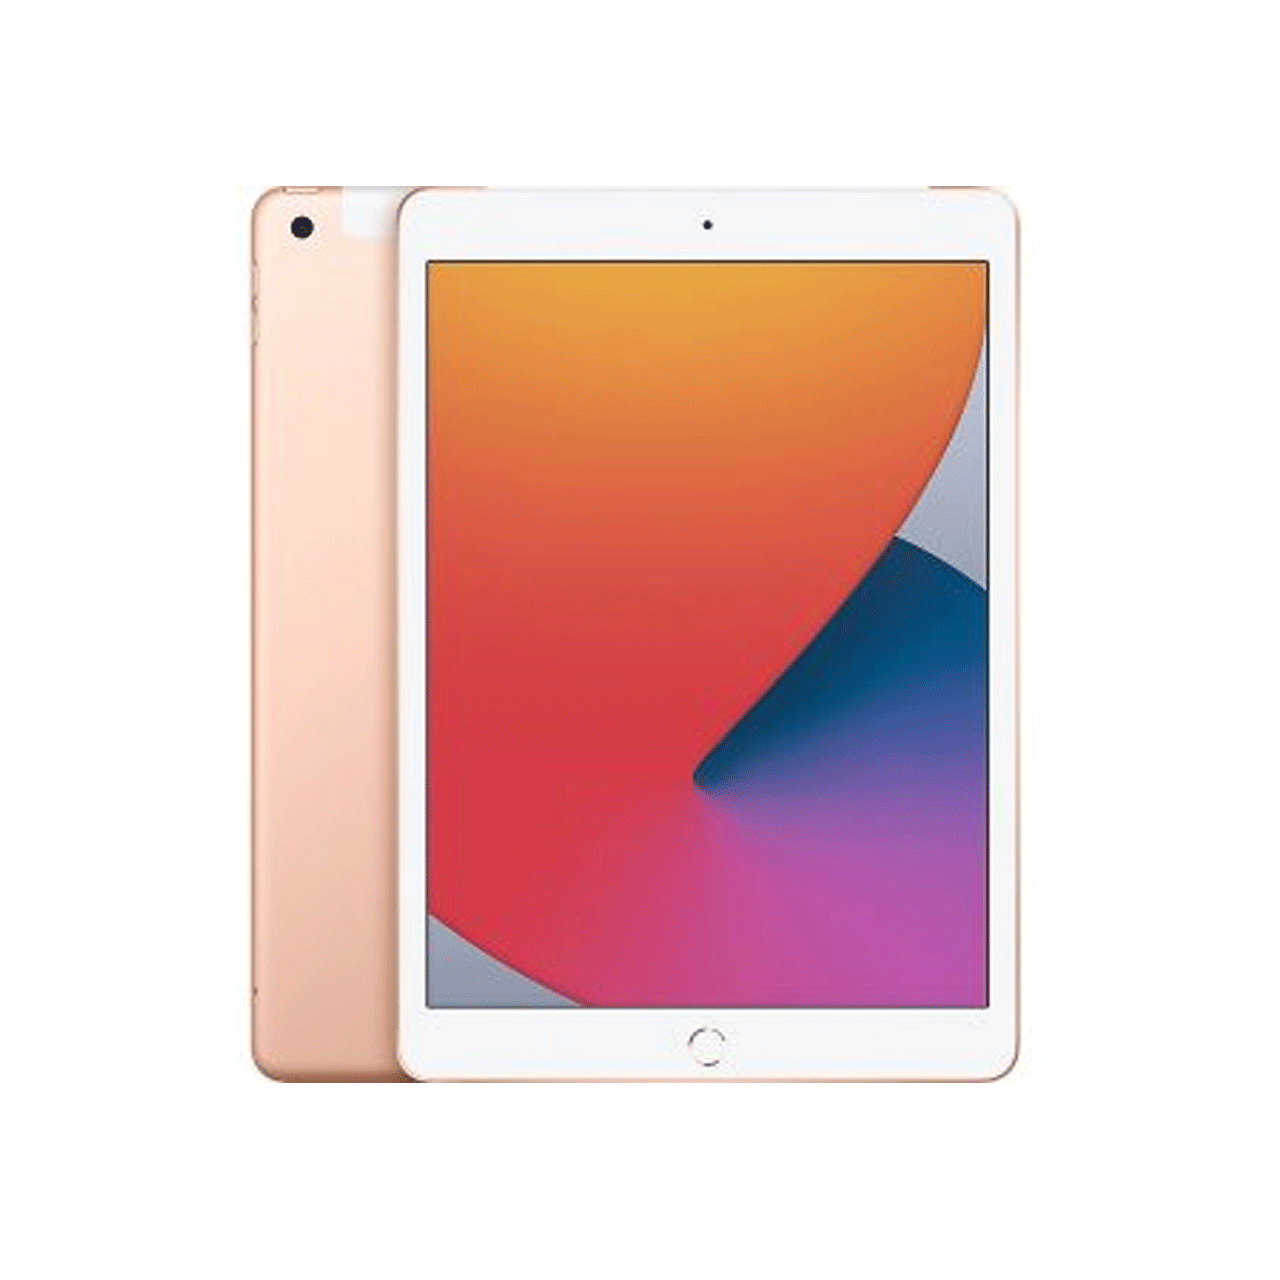 تبلت-اپل-آیپد-8-مدل-iPad-8-10.2-inch-2020-WiFi-ظرفیت-128-گیگابایت-silver